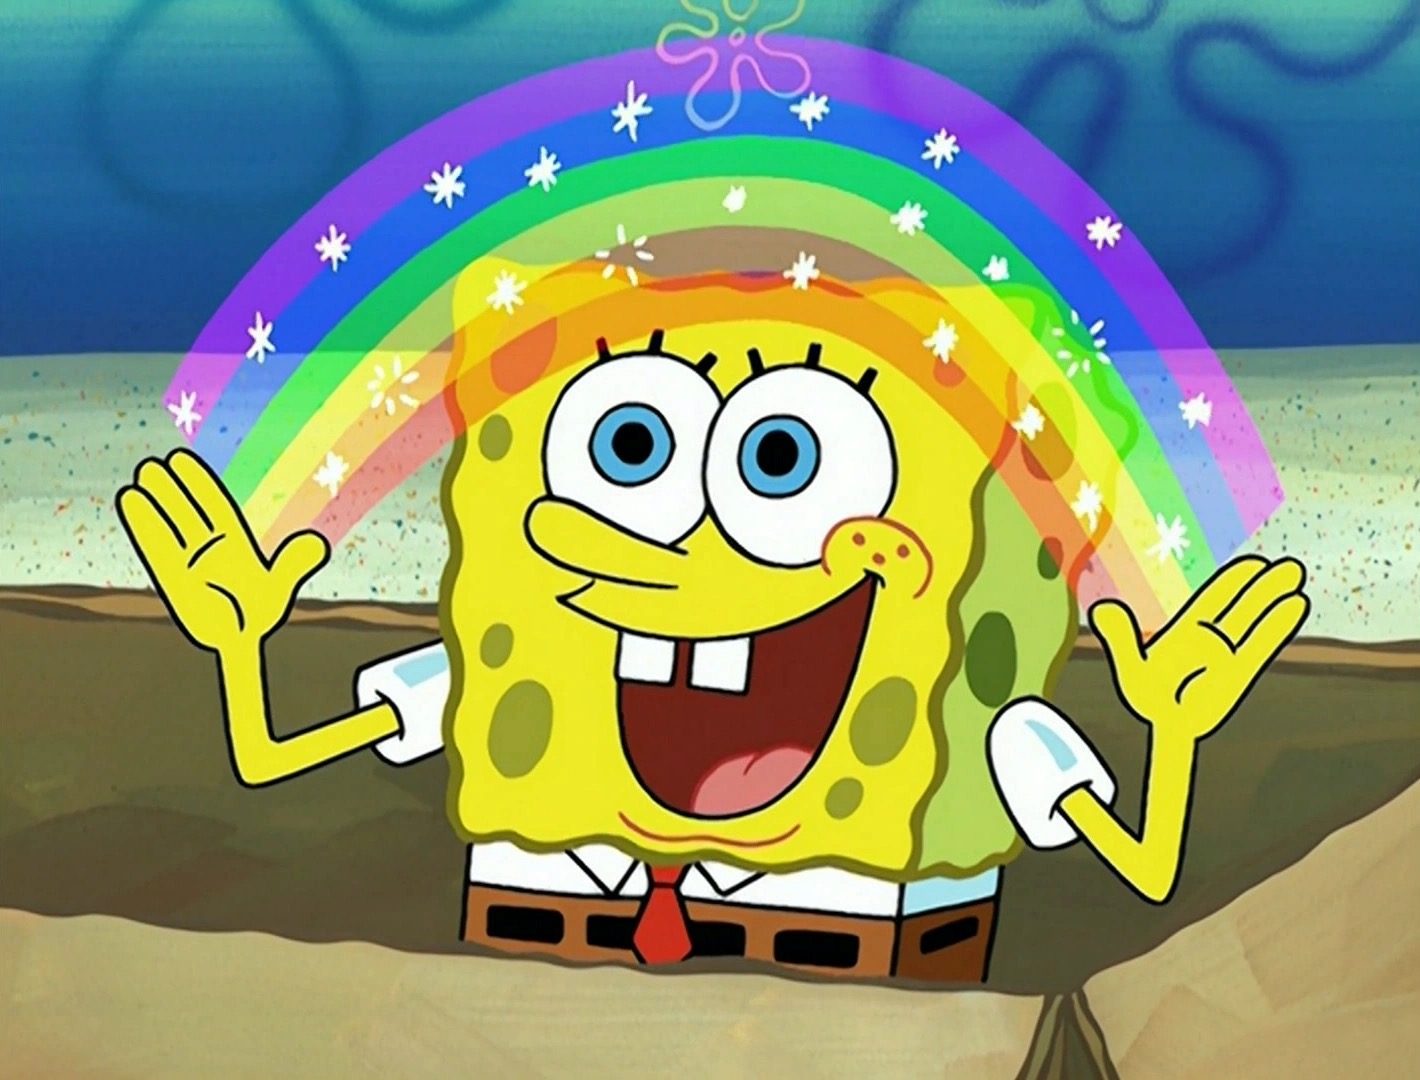 You got: Imagination SpongeBob! Which Popular SpongeBob Meme Are You? 🧽🤣